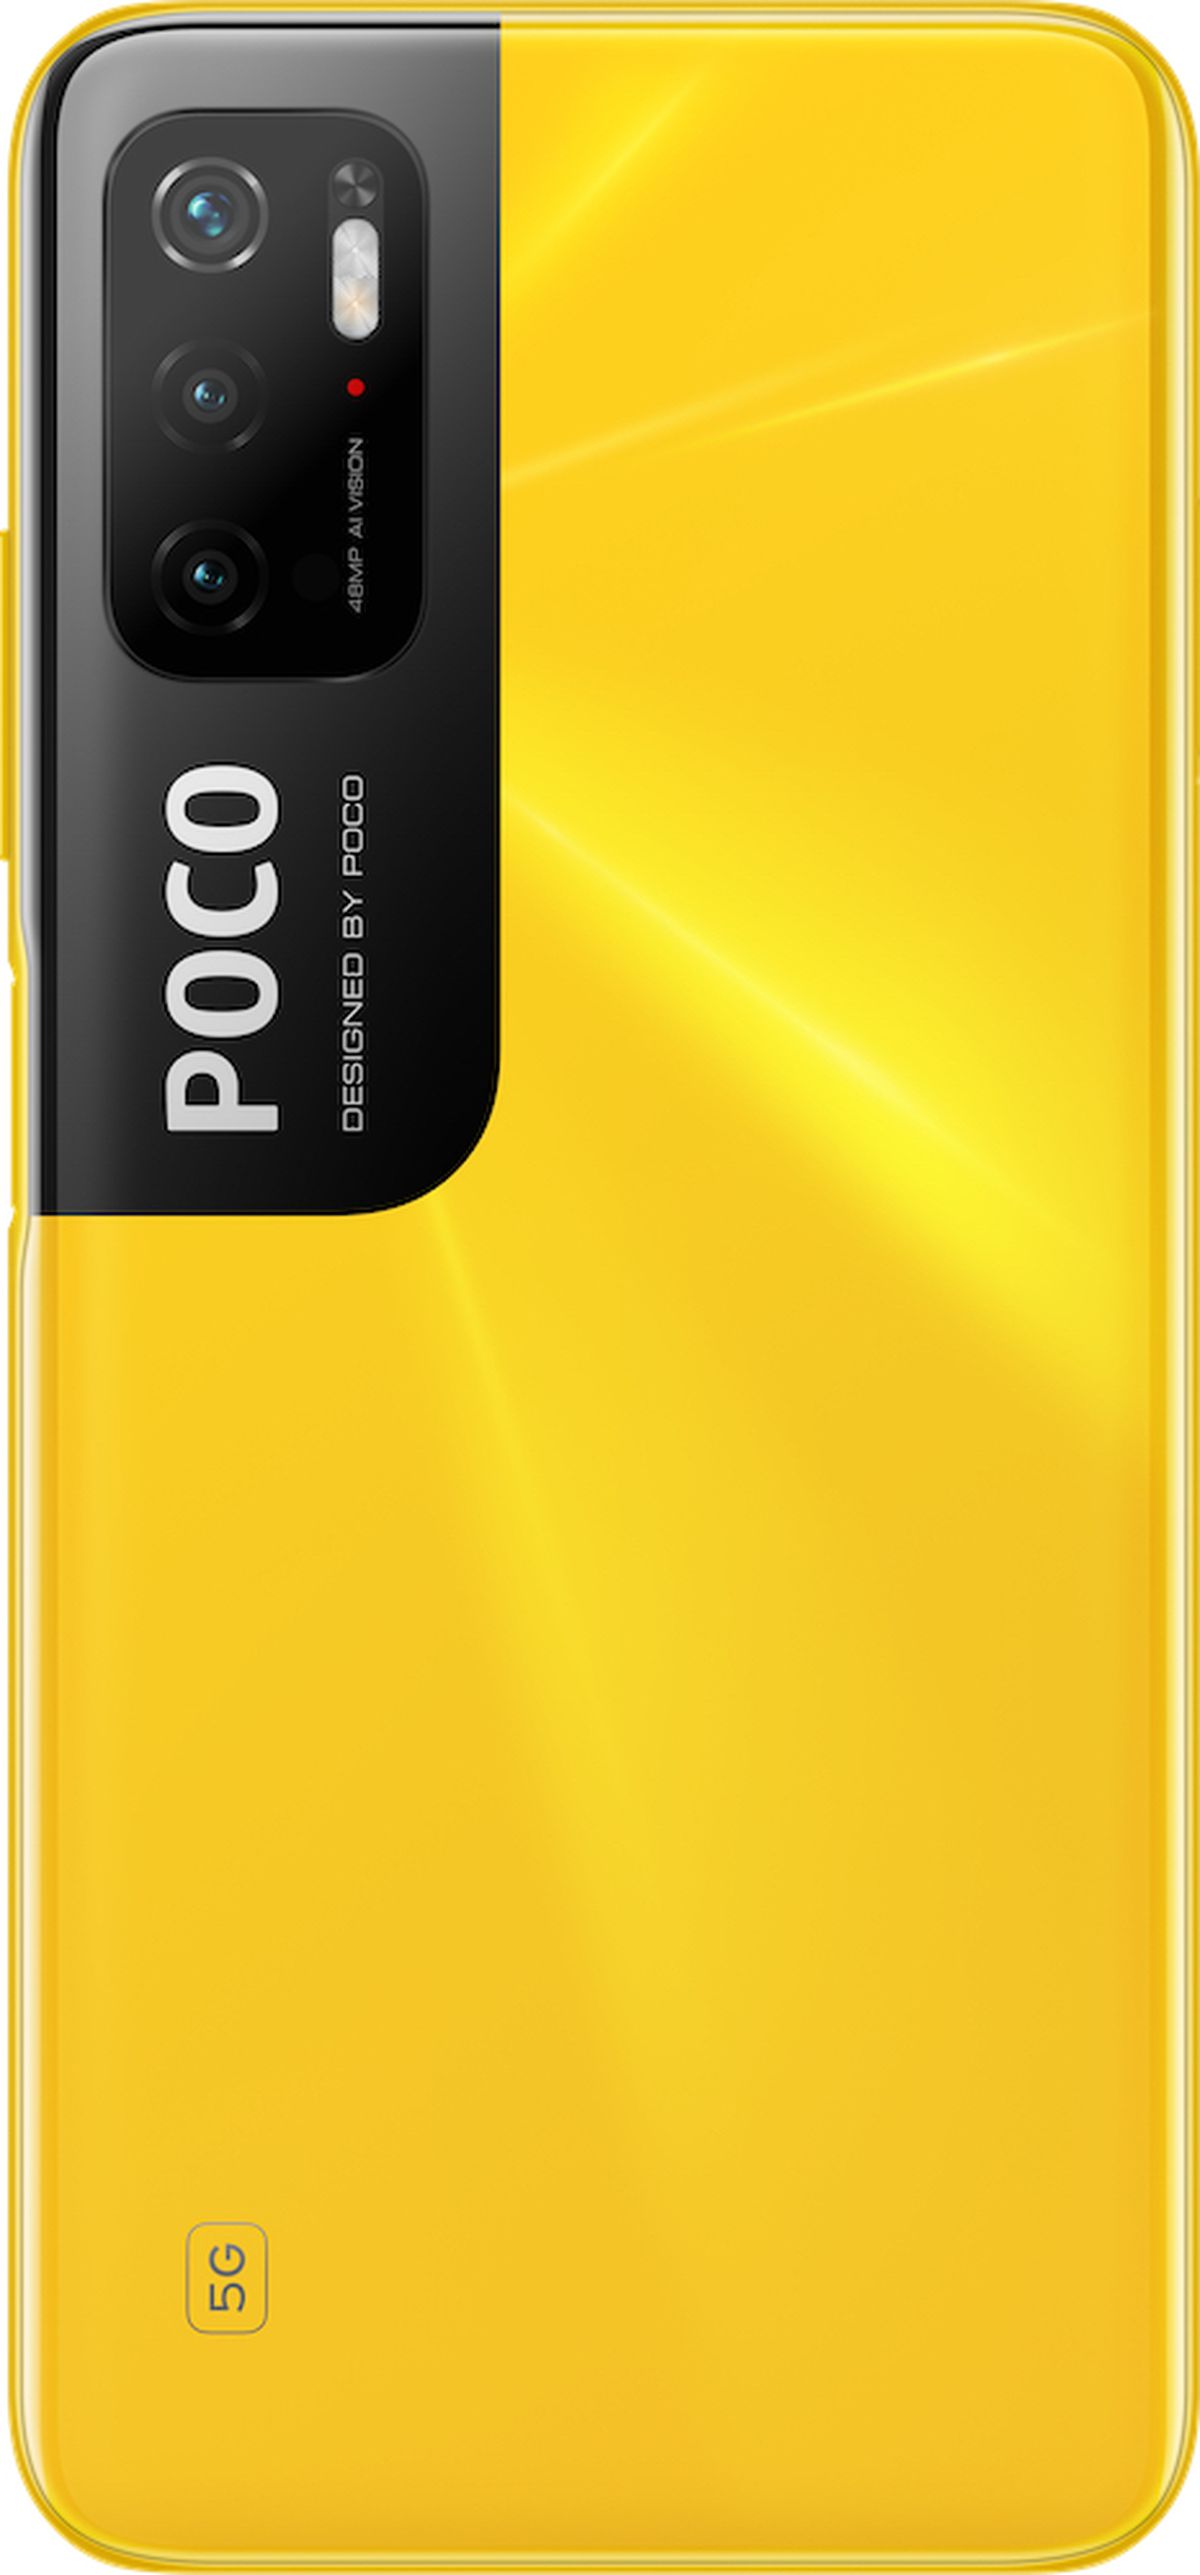 POCO M3 Pro 5G: precio, características y fecha de lanzamiento - Meristation